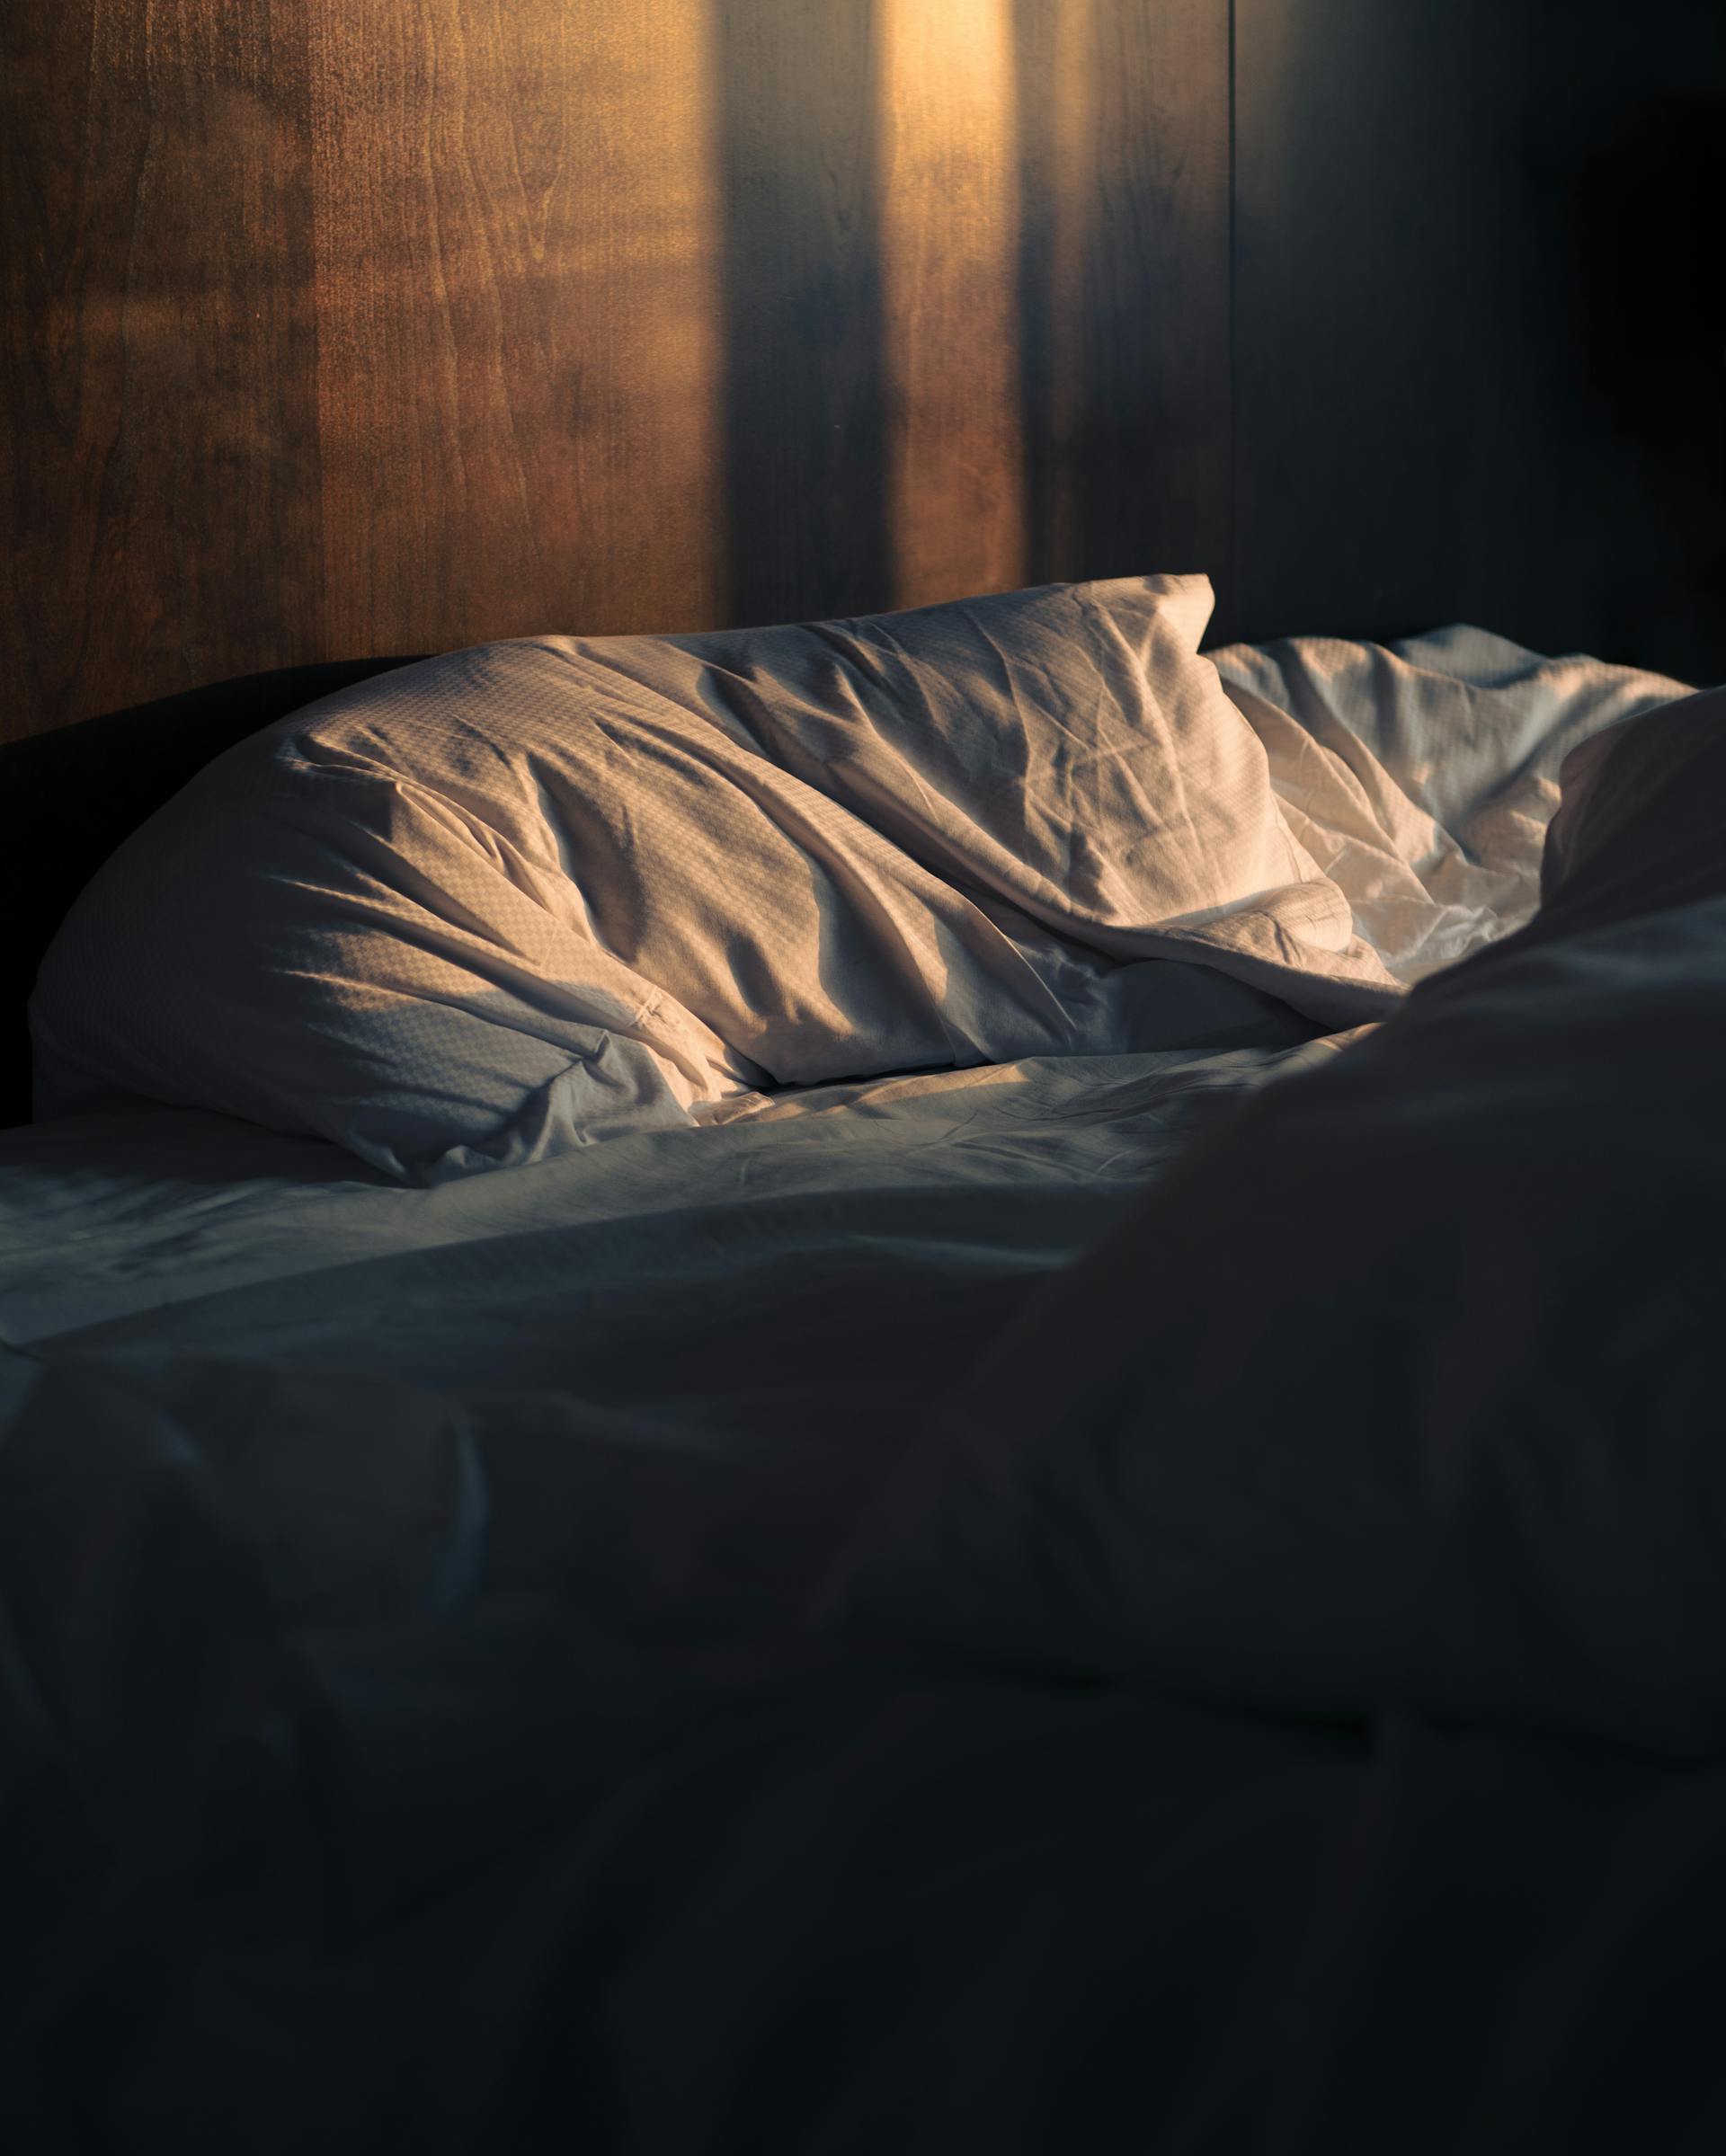 Una cama deshecha | Fuente: Pexels